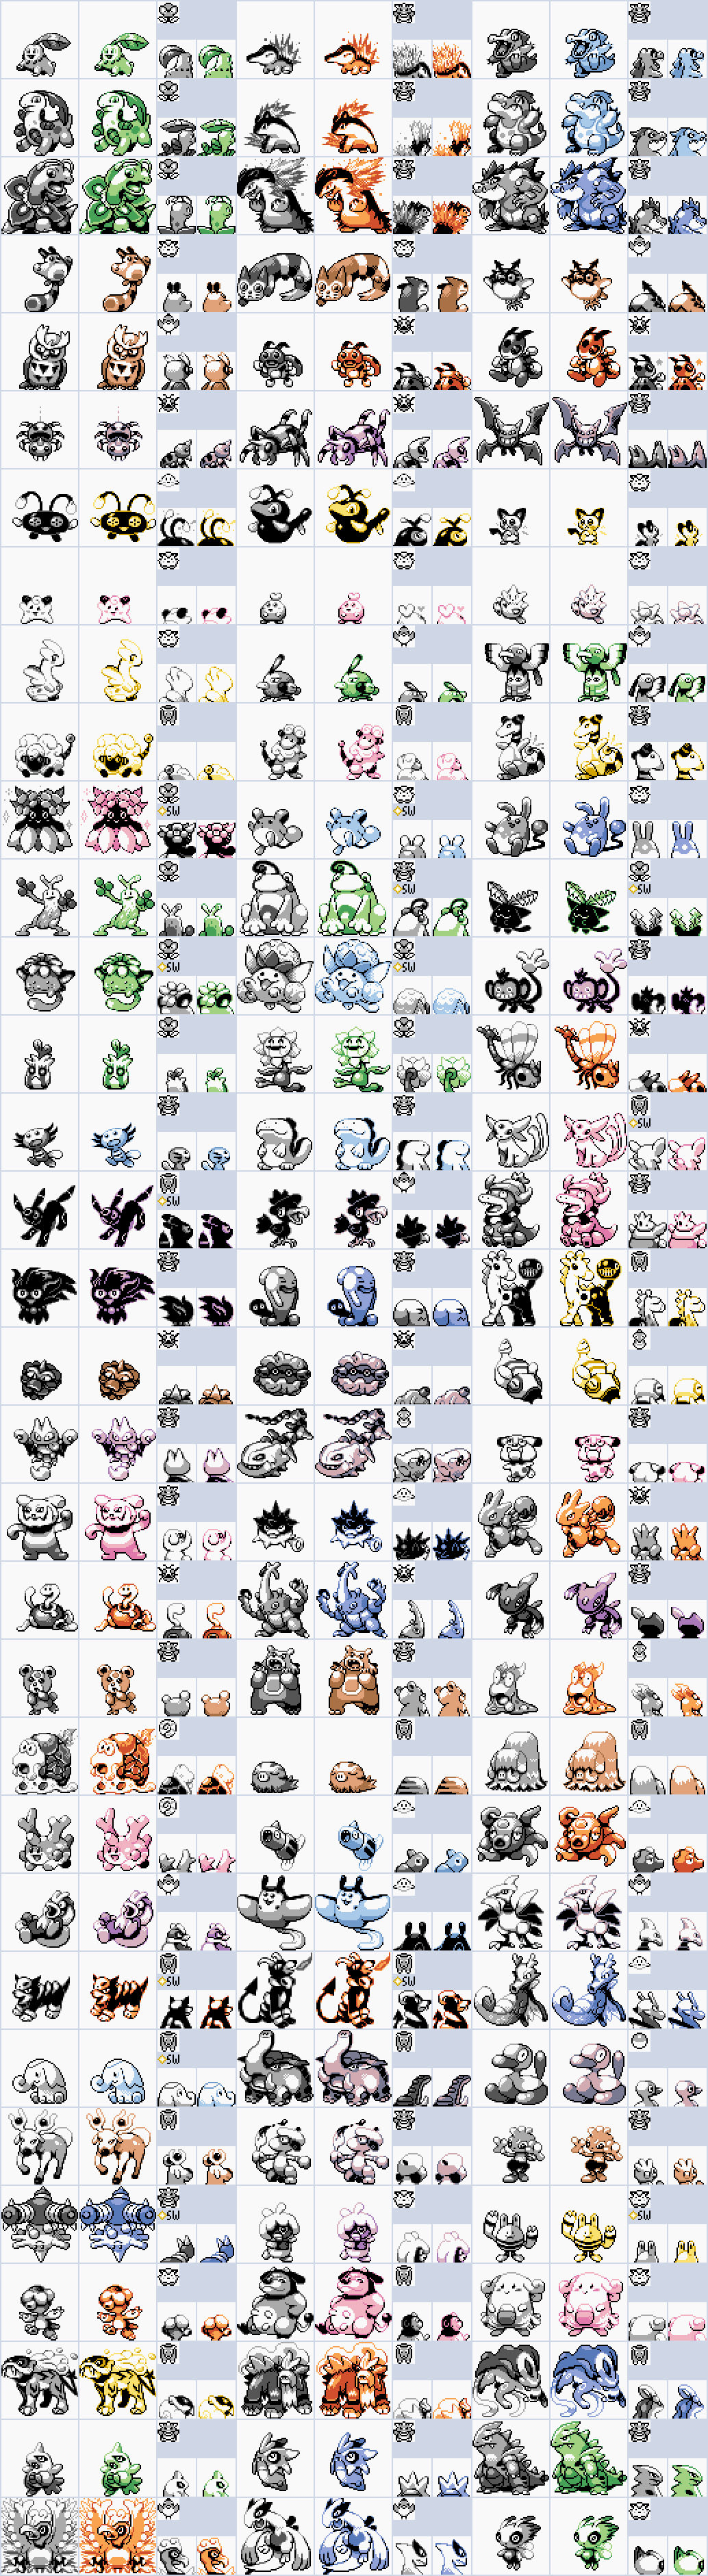 Every Gen 2 Pokemon Sprites in Gen 1's Style. by SkidMarc25 on